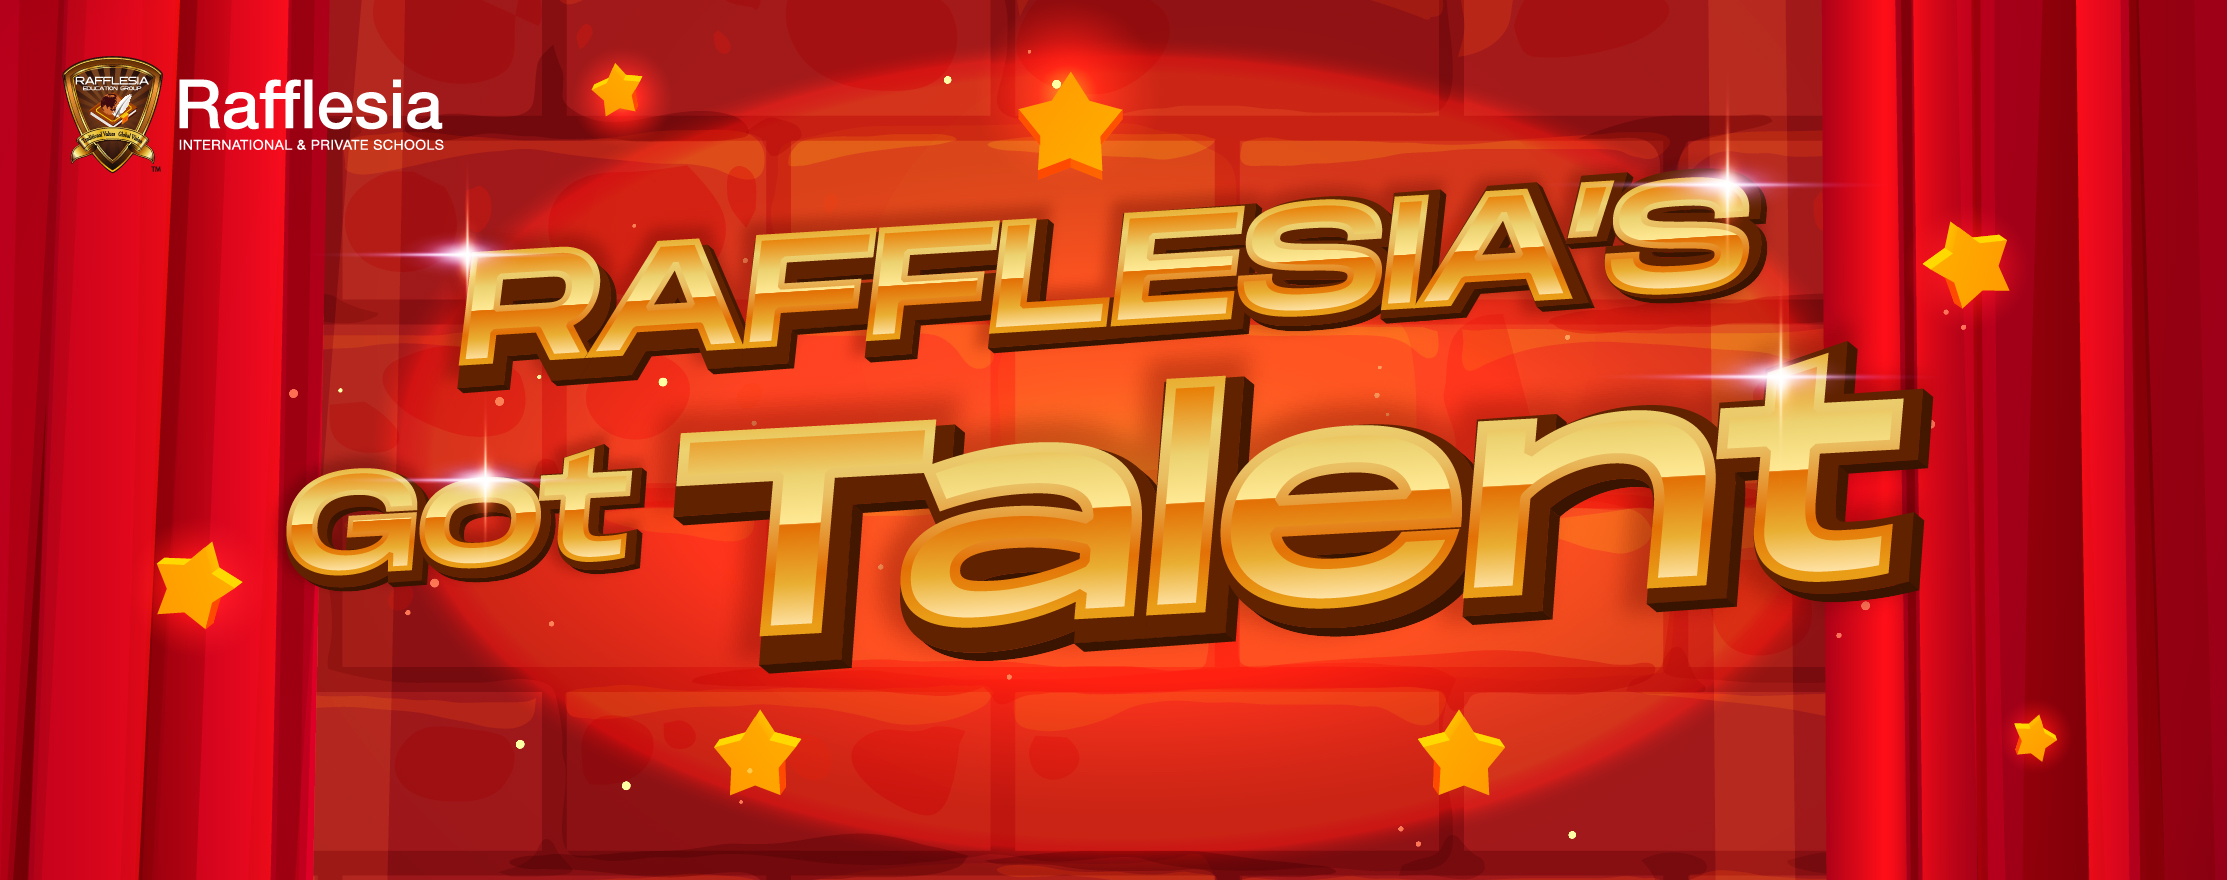 Rafflesia Got Talent